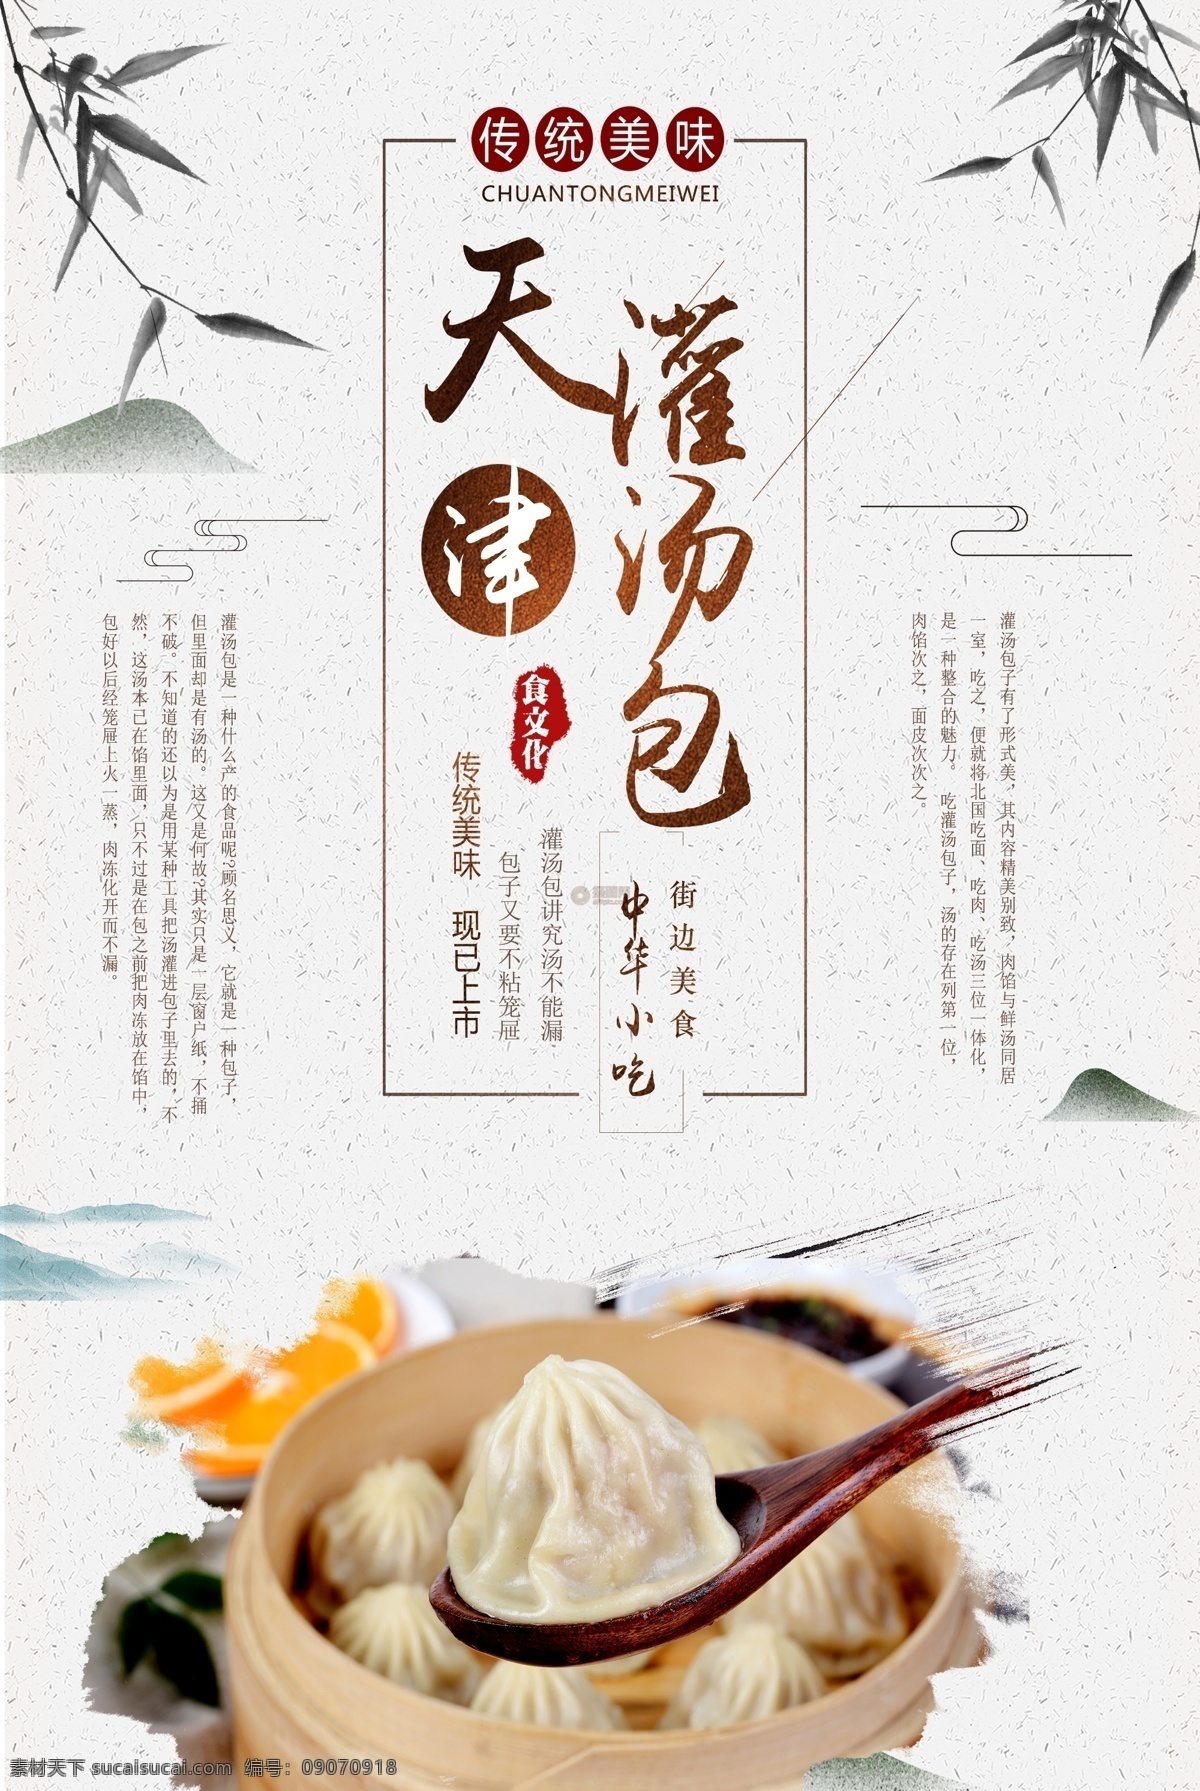 天津 灌 汤包 海报 促销 美食 传统 中华 小吃 灌汤包 包子 美食餐饮